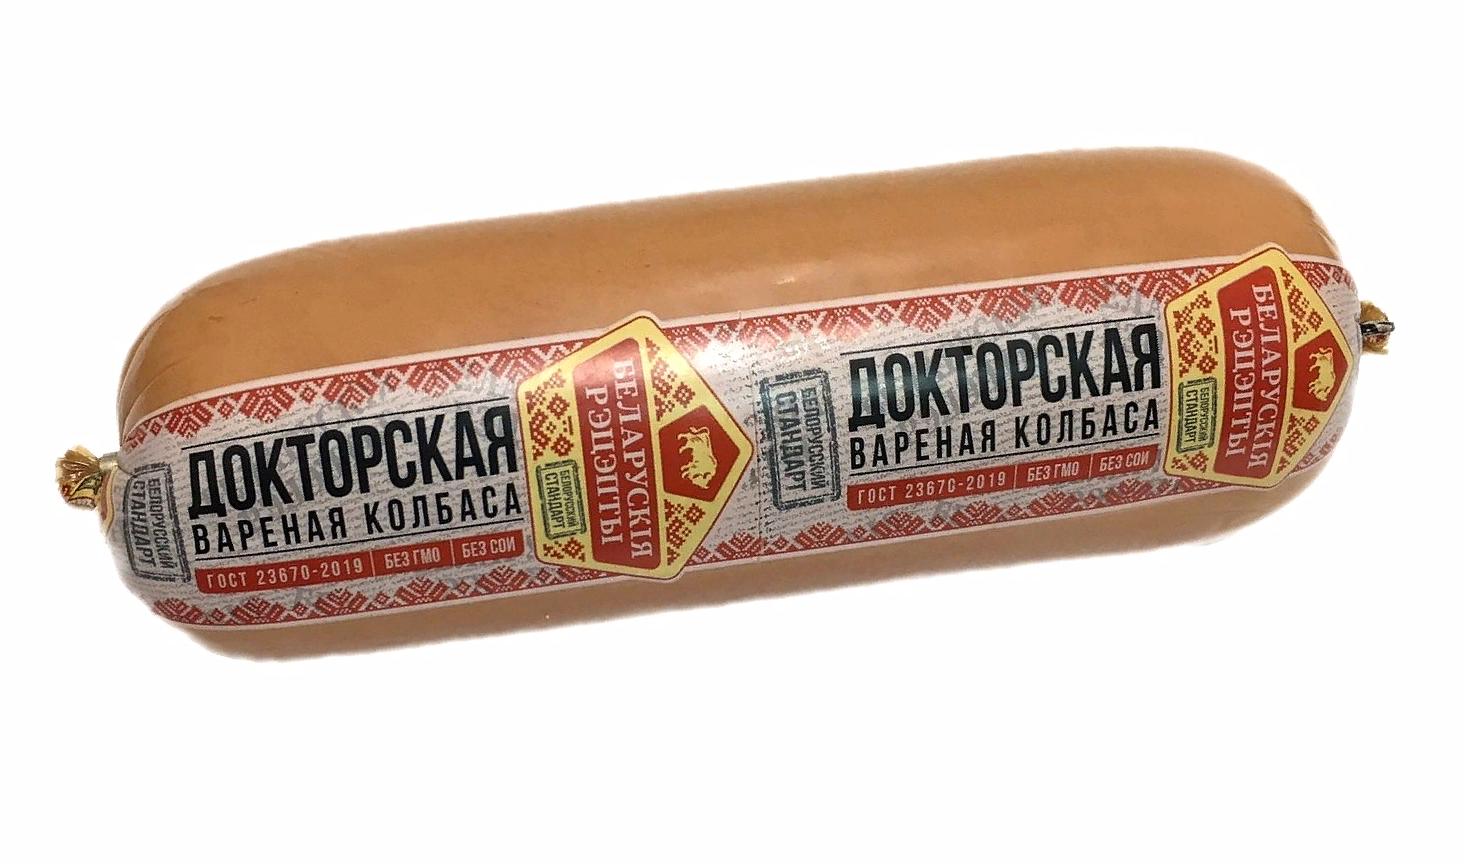 Вареная колбаса «Докторская» ГОСТ купить по оптовой цене в ДюбуА